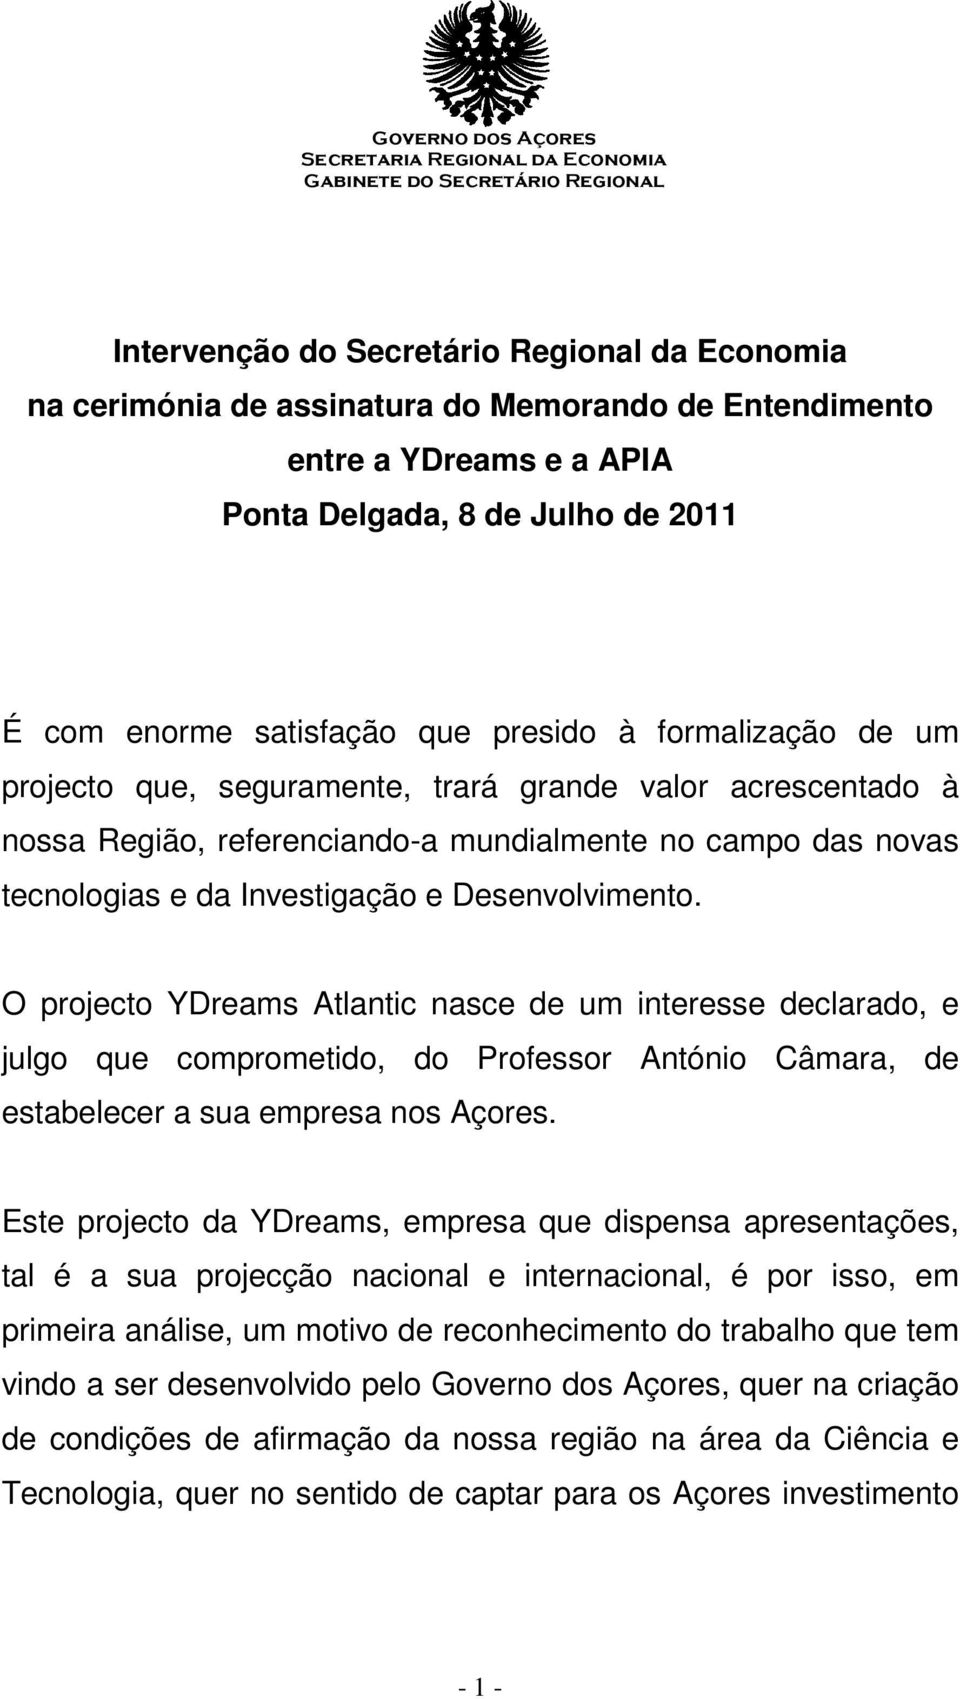 O projecto YDreams Atlantic nasce de um interesse declarado, e julgo que comprometido, do Professor António Câmara, de estabelecer a sua empresa nos Açores.